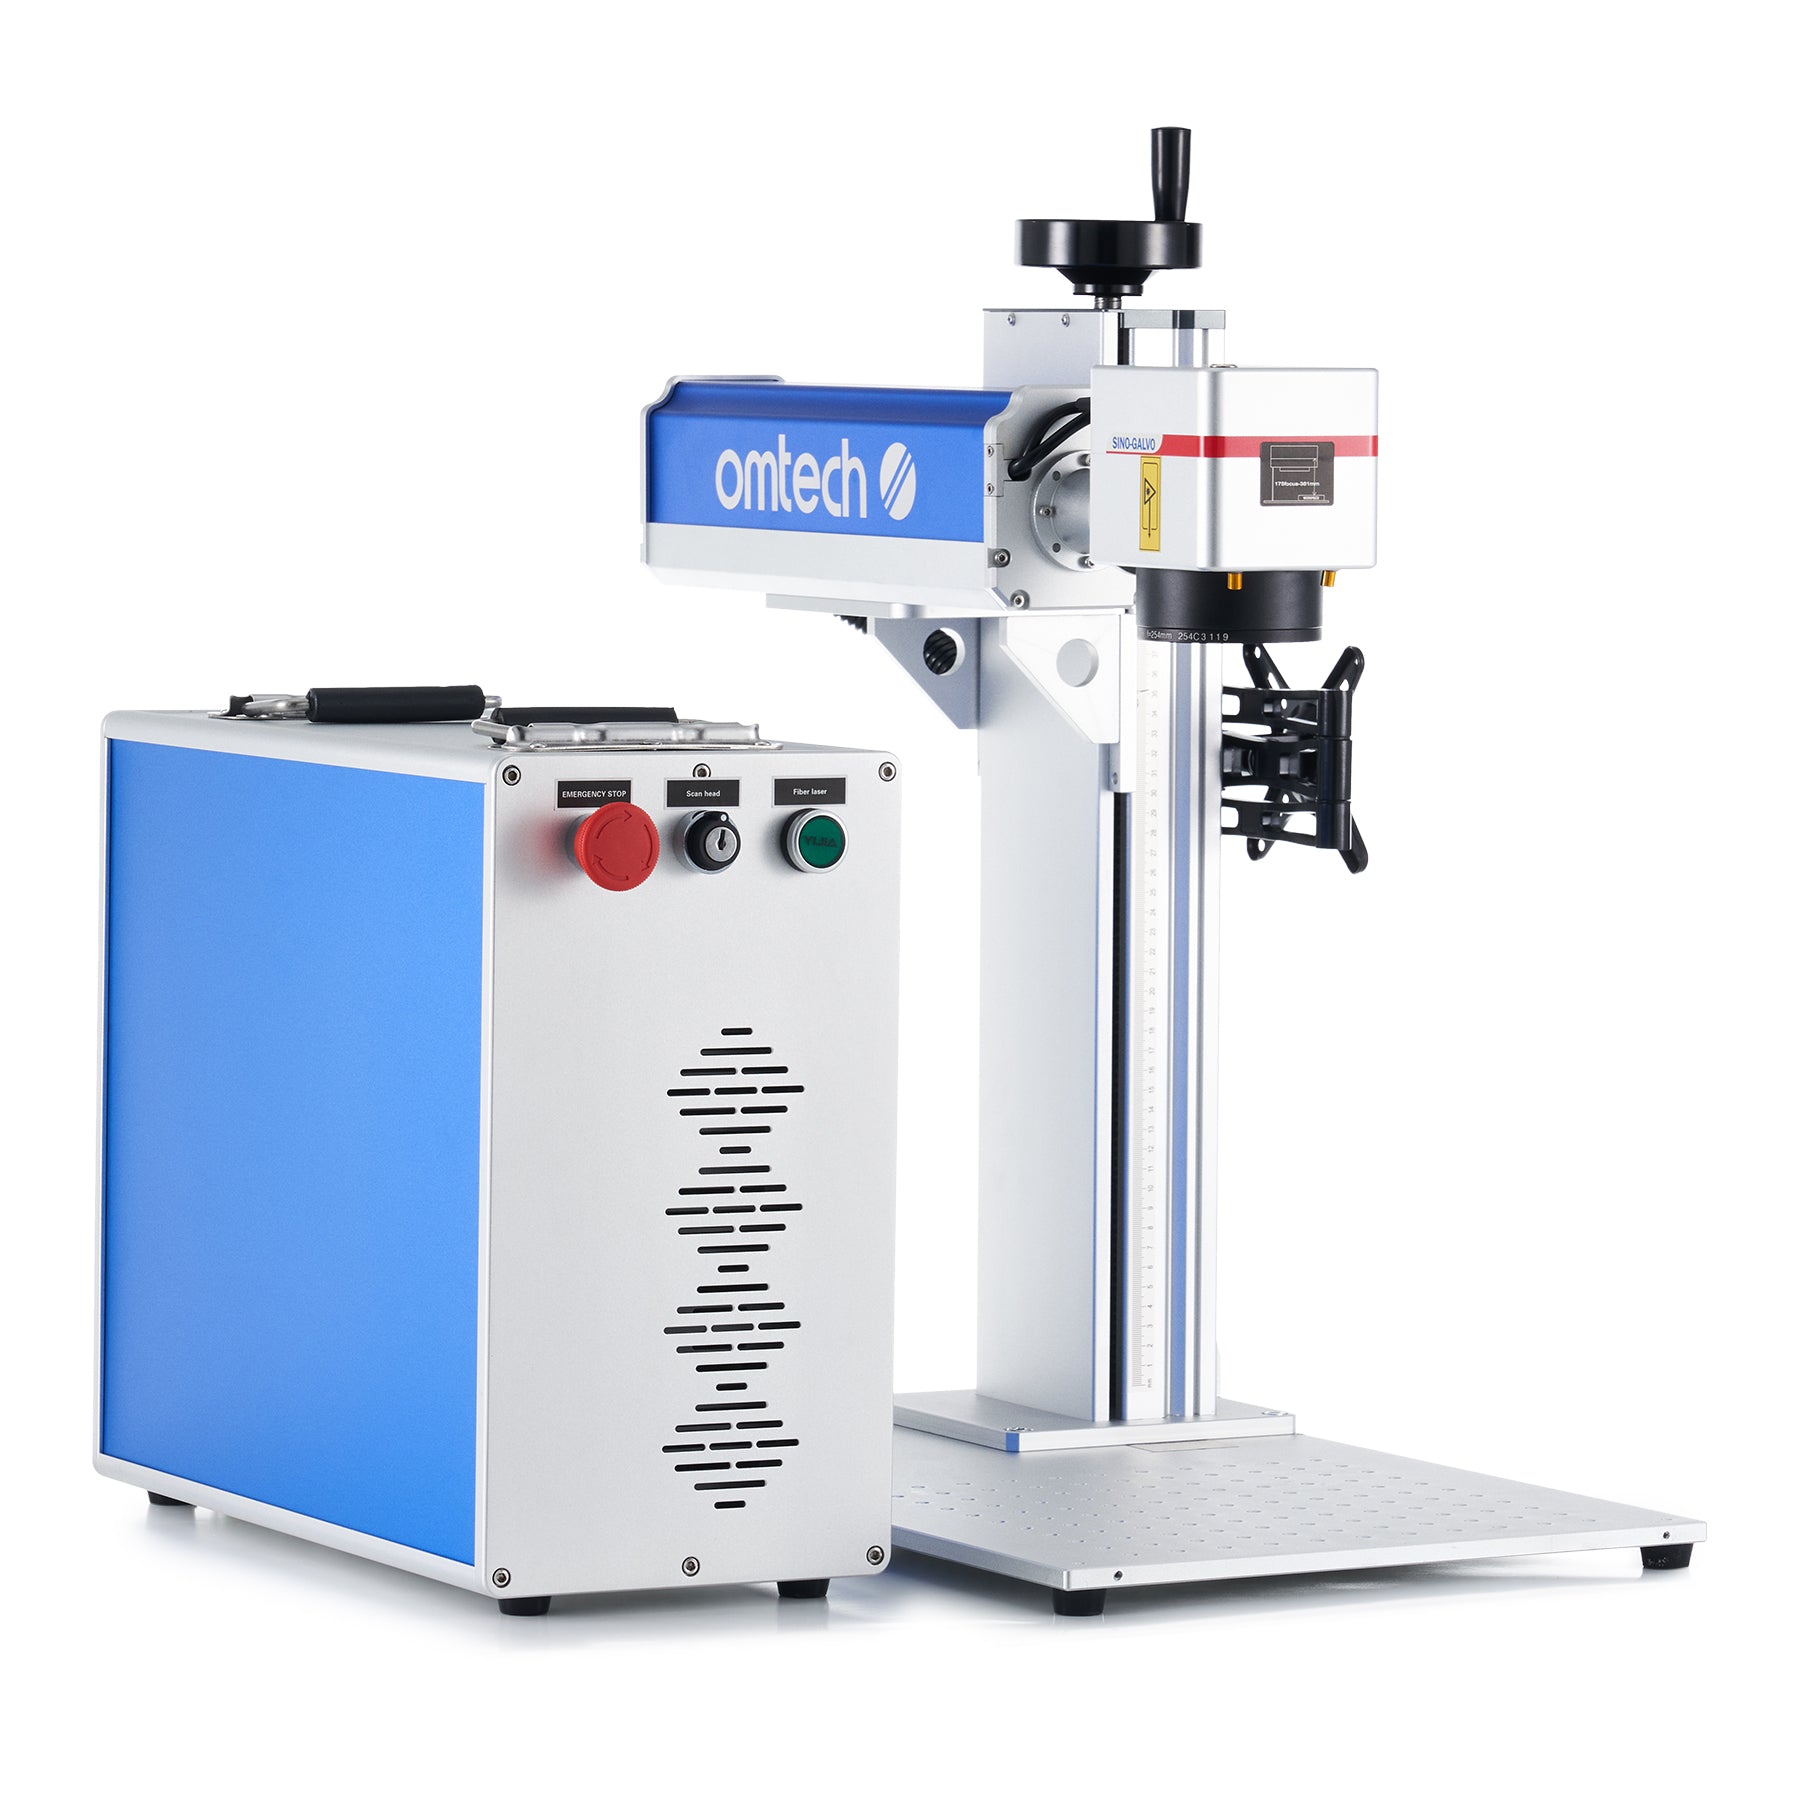 20W Fiber Laser Engraving Machine for Metal Engraving & Metal Marking | F-20